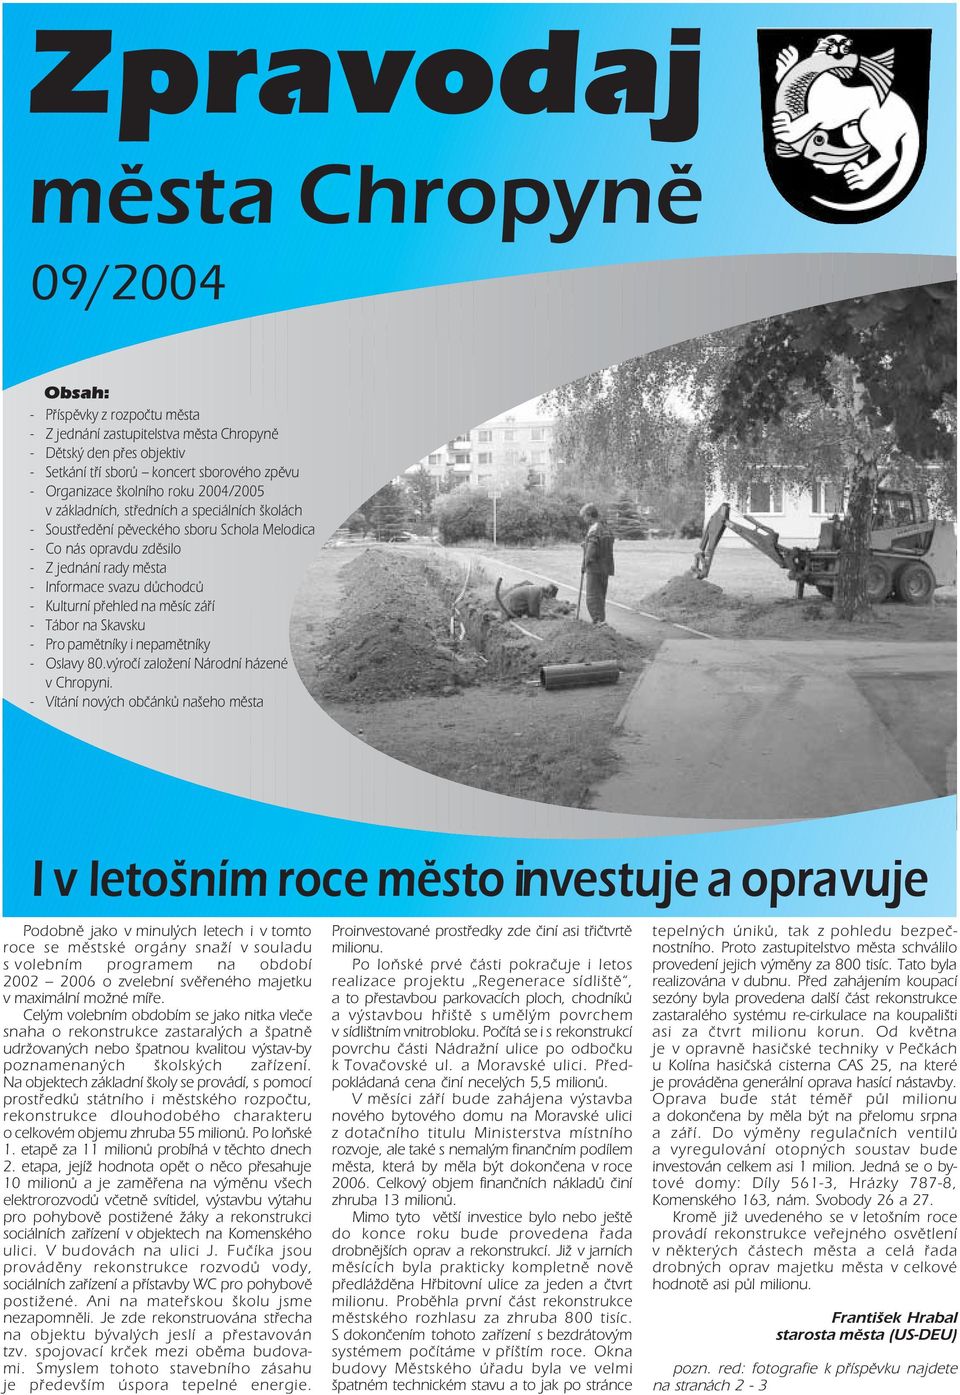 pamětníky i nepamětníky Oslavy 80.výročí založení Národní házené v Chropyni.